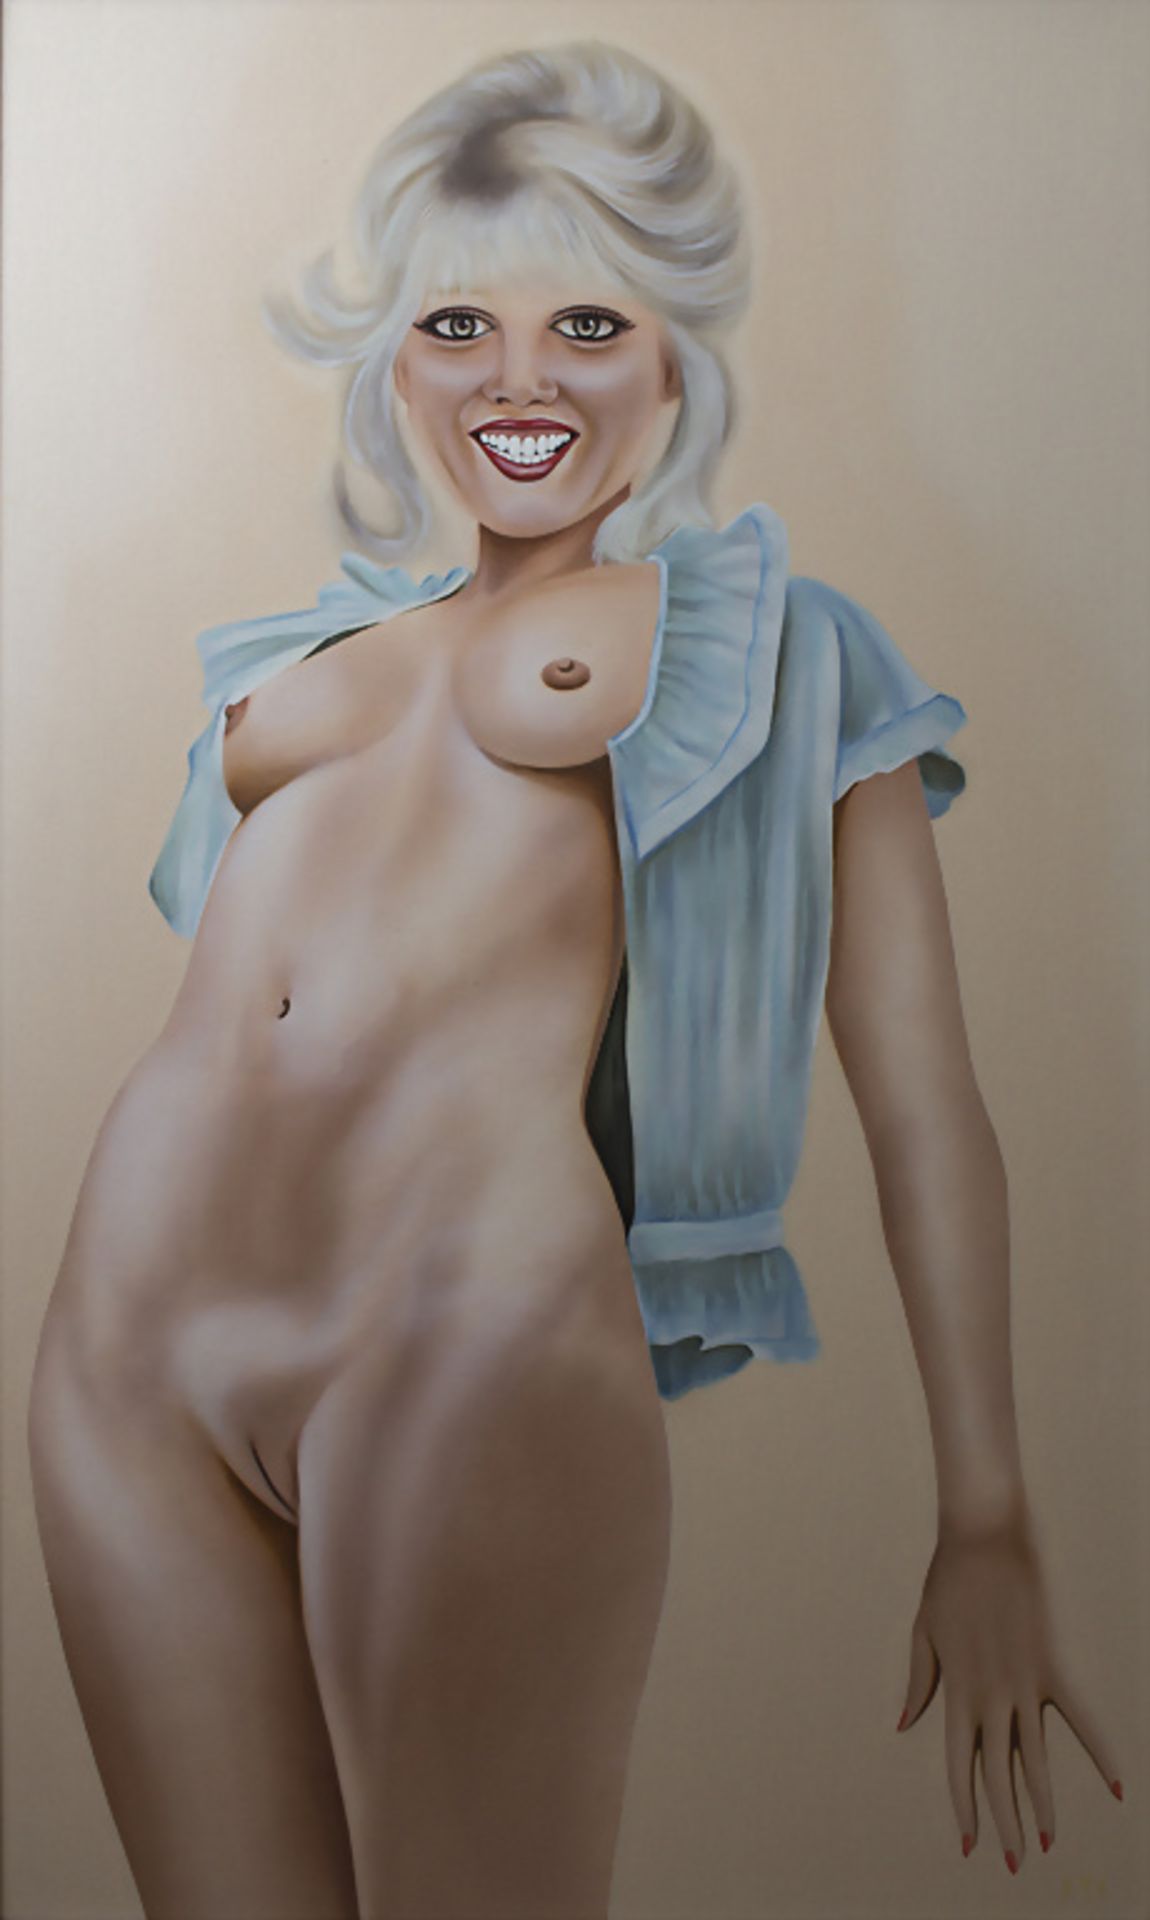 Ulrich Schichhold (1942-2012), 'Lachender Frauenakt' / 'A smiling female nude', 1986